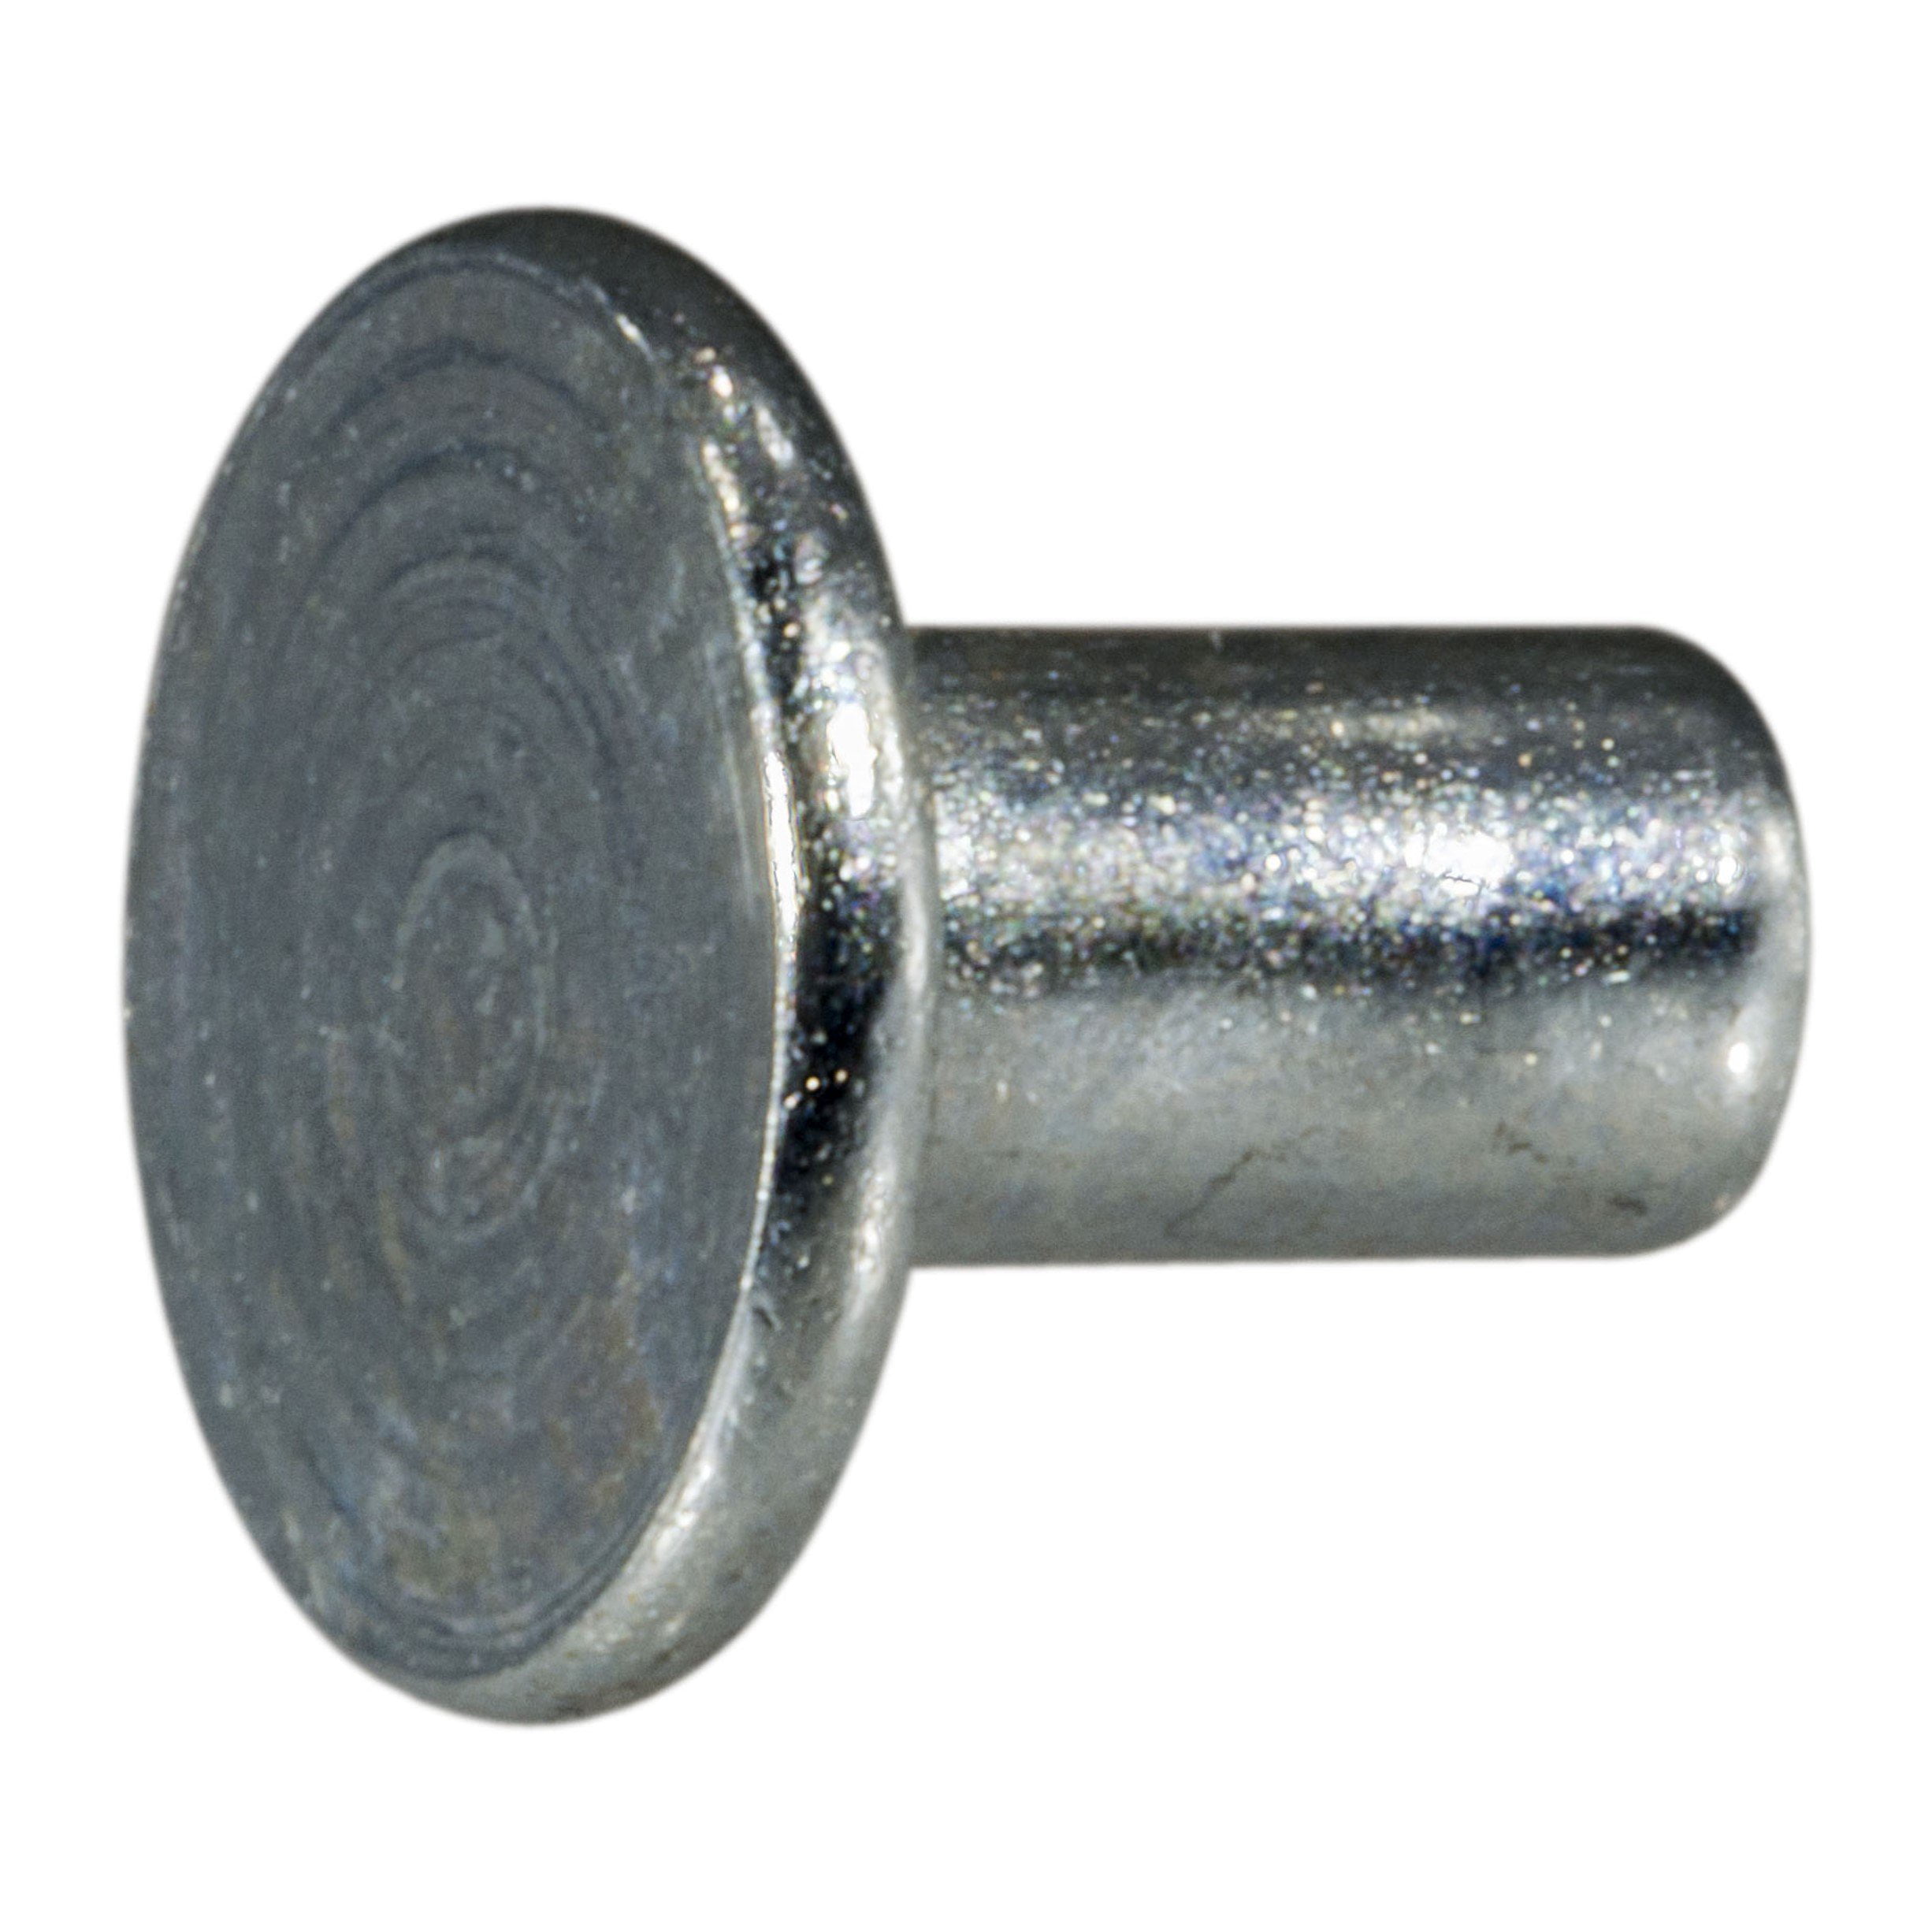 60 pcs. 3/16" x 5/16" Zinc Plated Steel Tubular Rivets TRIVT-094 